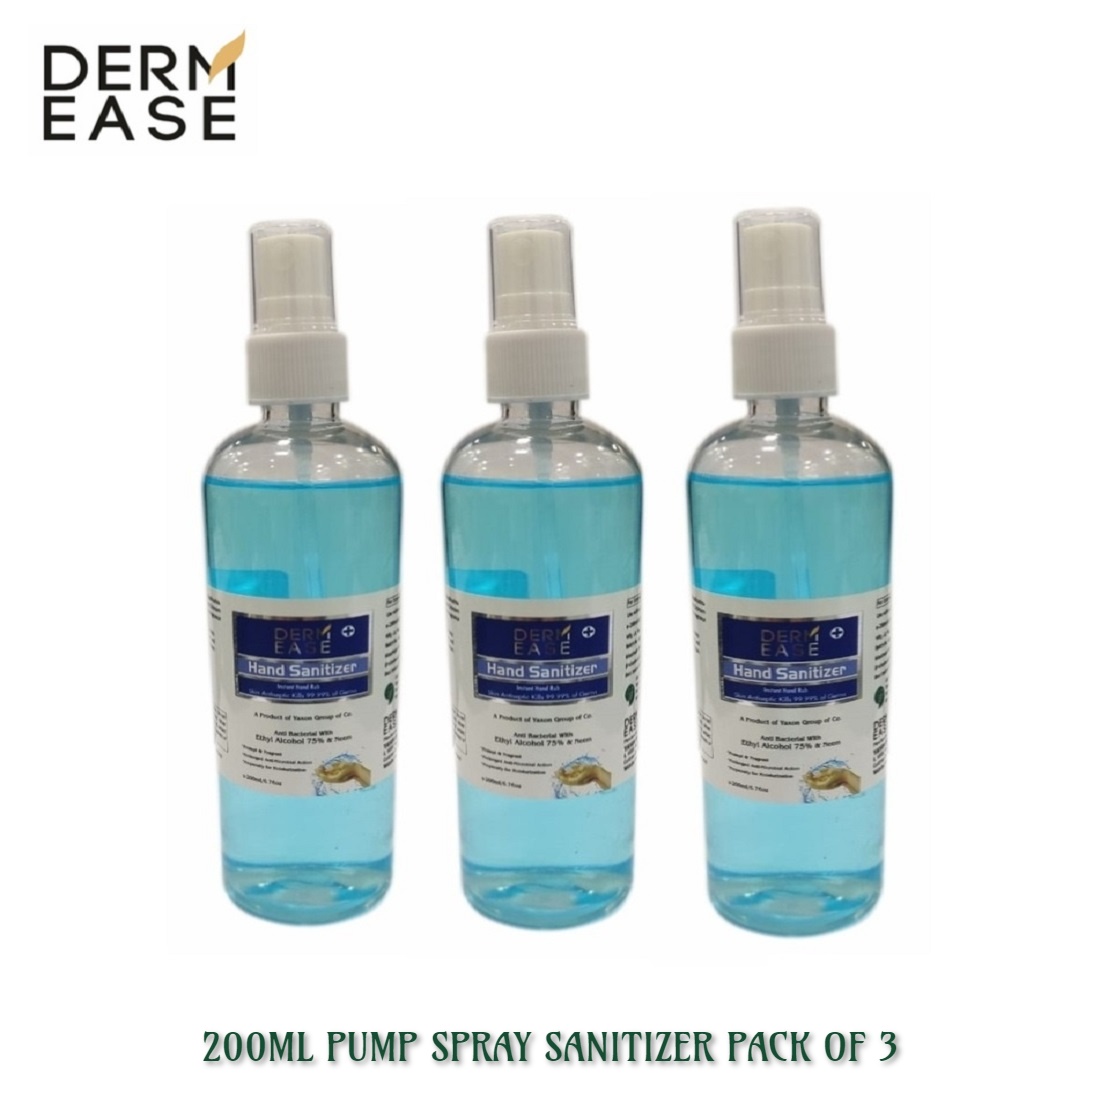 DERM EASE MIST PUMP SPRAY Hand Sanitizer 200ml Pack of 3